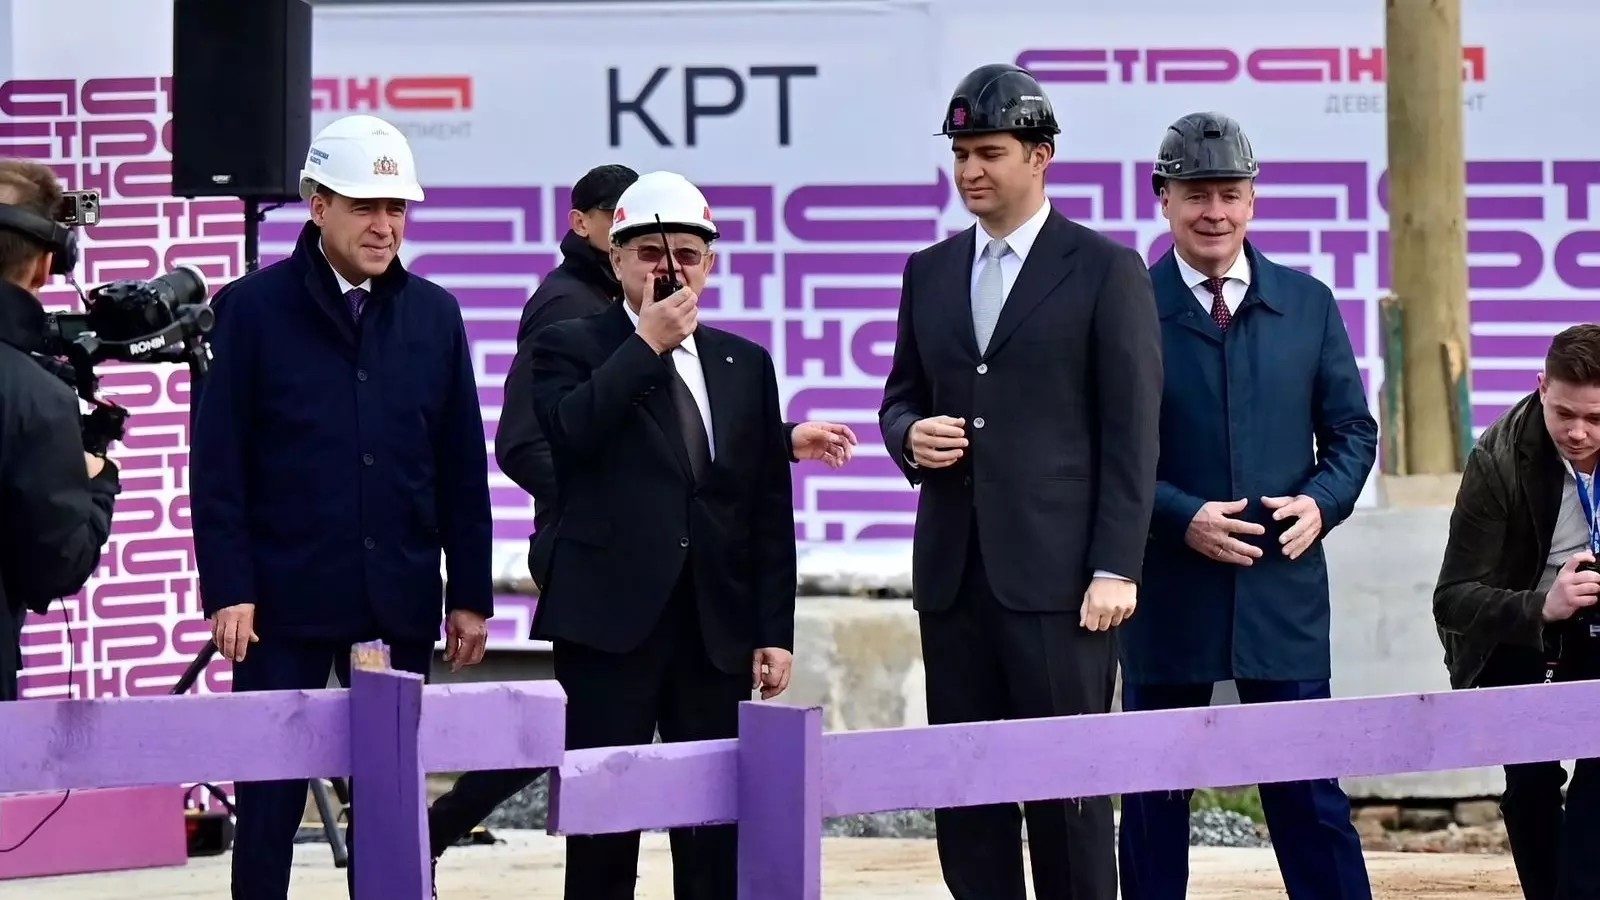 Министр строительства и ЖКХ РФ дал старт первому проекту КРТ «Страны» в Екатеринбурге